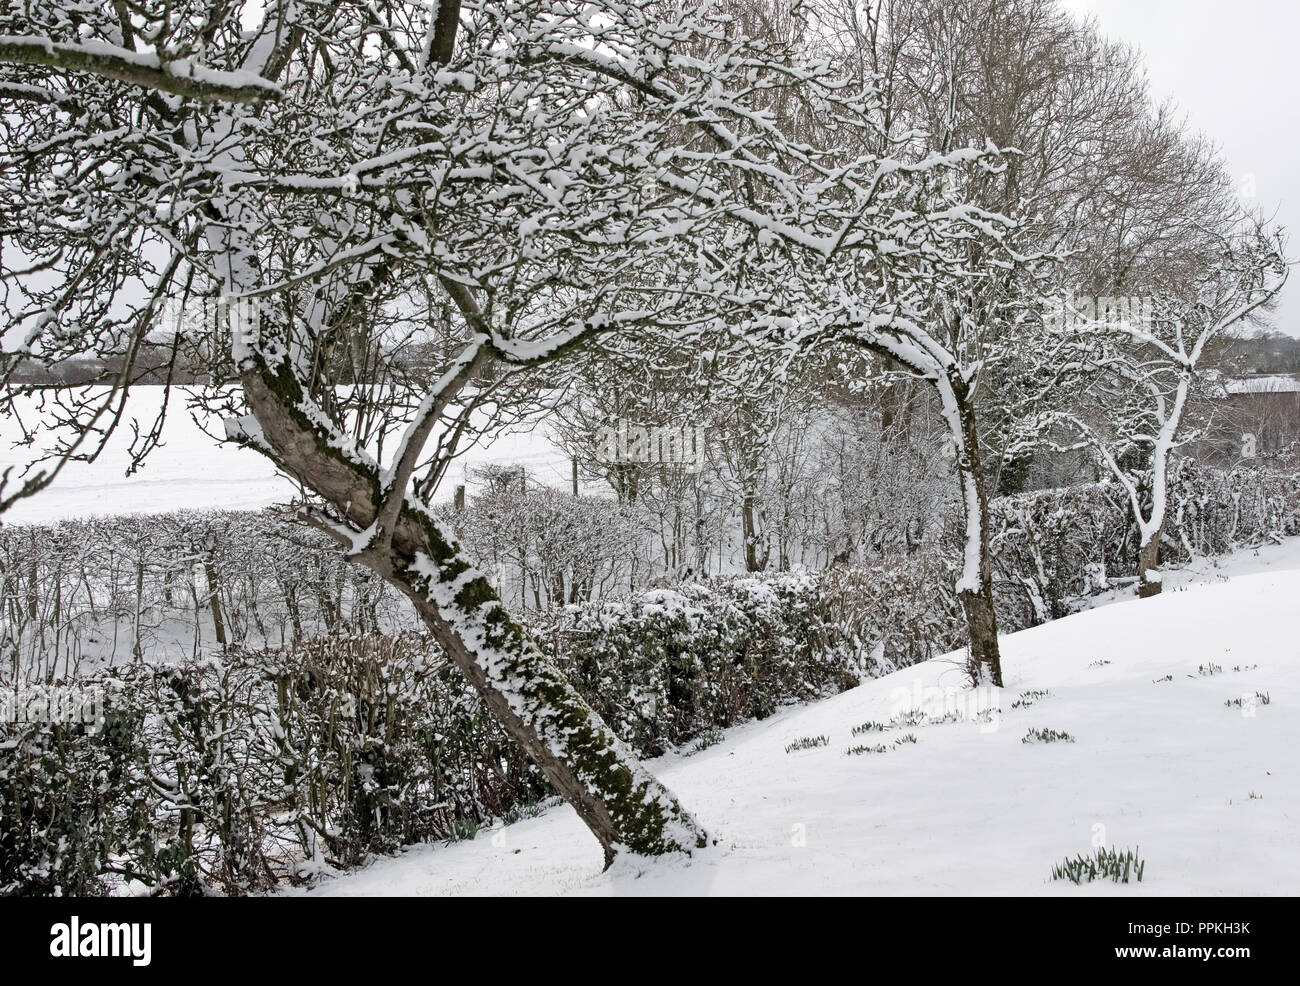 Bestia del este - viejos manzanos con ramas cubiertas de nieve en el jardín rural, Cumbria, Inglaterra, .Febrero 2018, bulbos que se retocaban a través de la nieve. Foto de stock